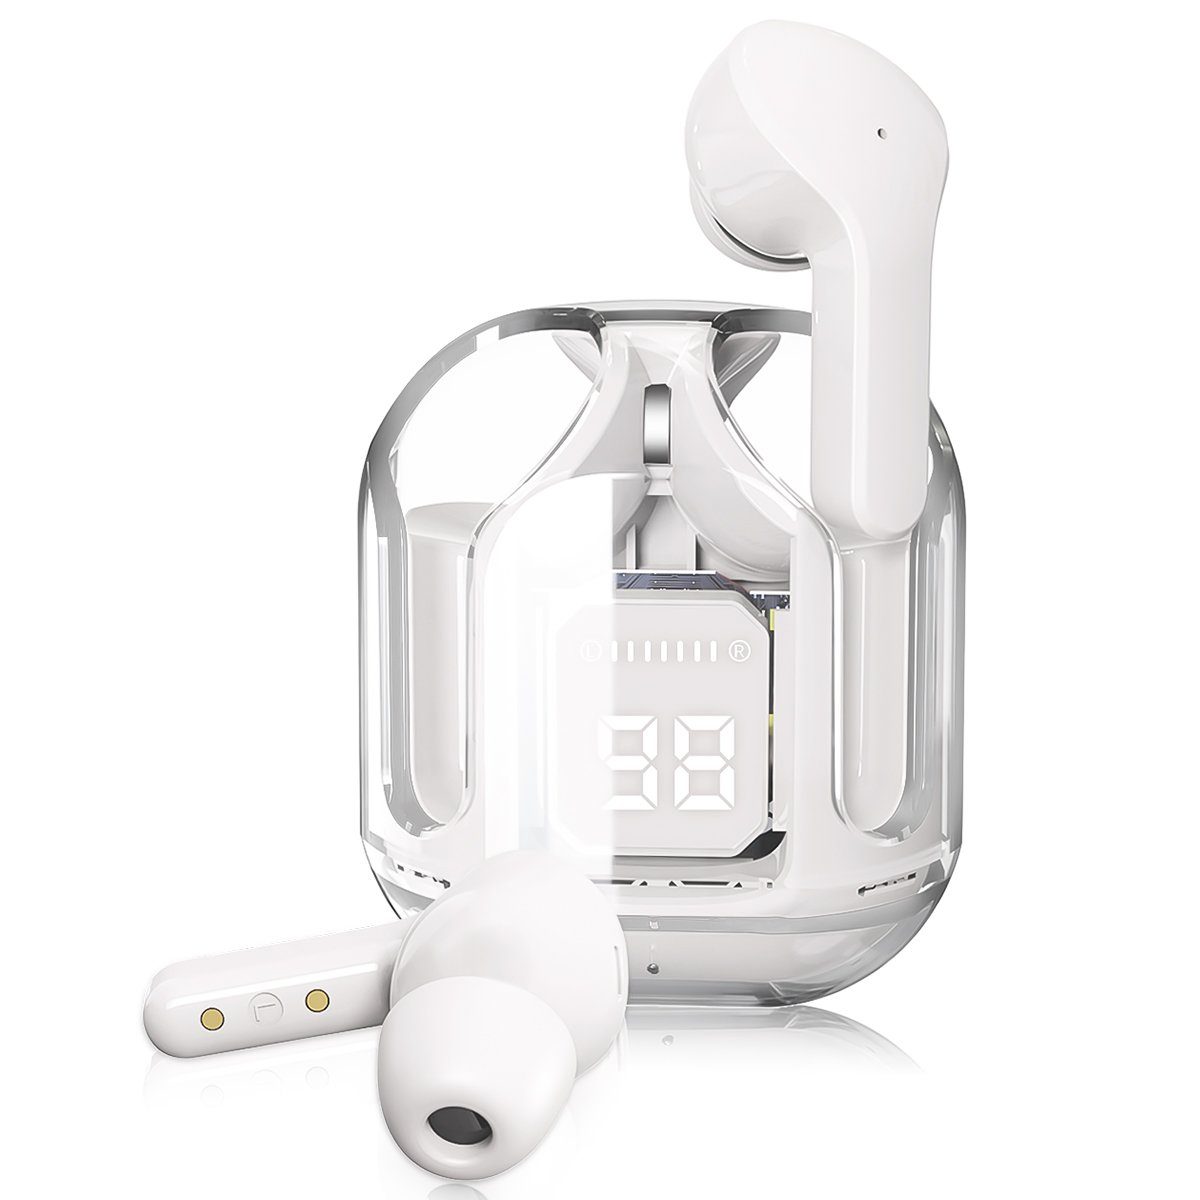 Kabellos 10-minütigen Stunden HiFi Stereoklang, für EDR, 5.3 Kopfhoerer Weiß + mit Aufladung) 7Magic Dual In-Ear-Kopfhörer wireless Wiedergabe Bluetooth 1,5 (Komposit-Audiotreiber einer mit Mikrofon